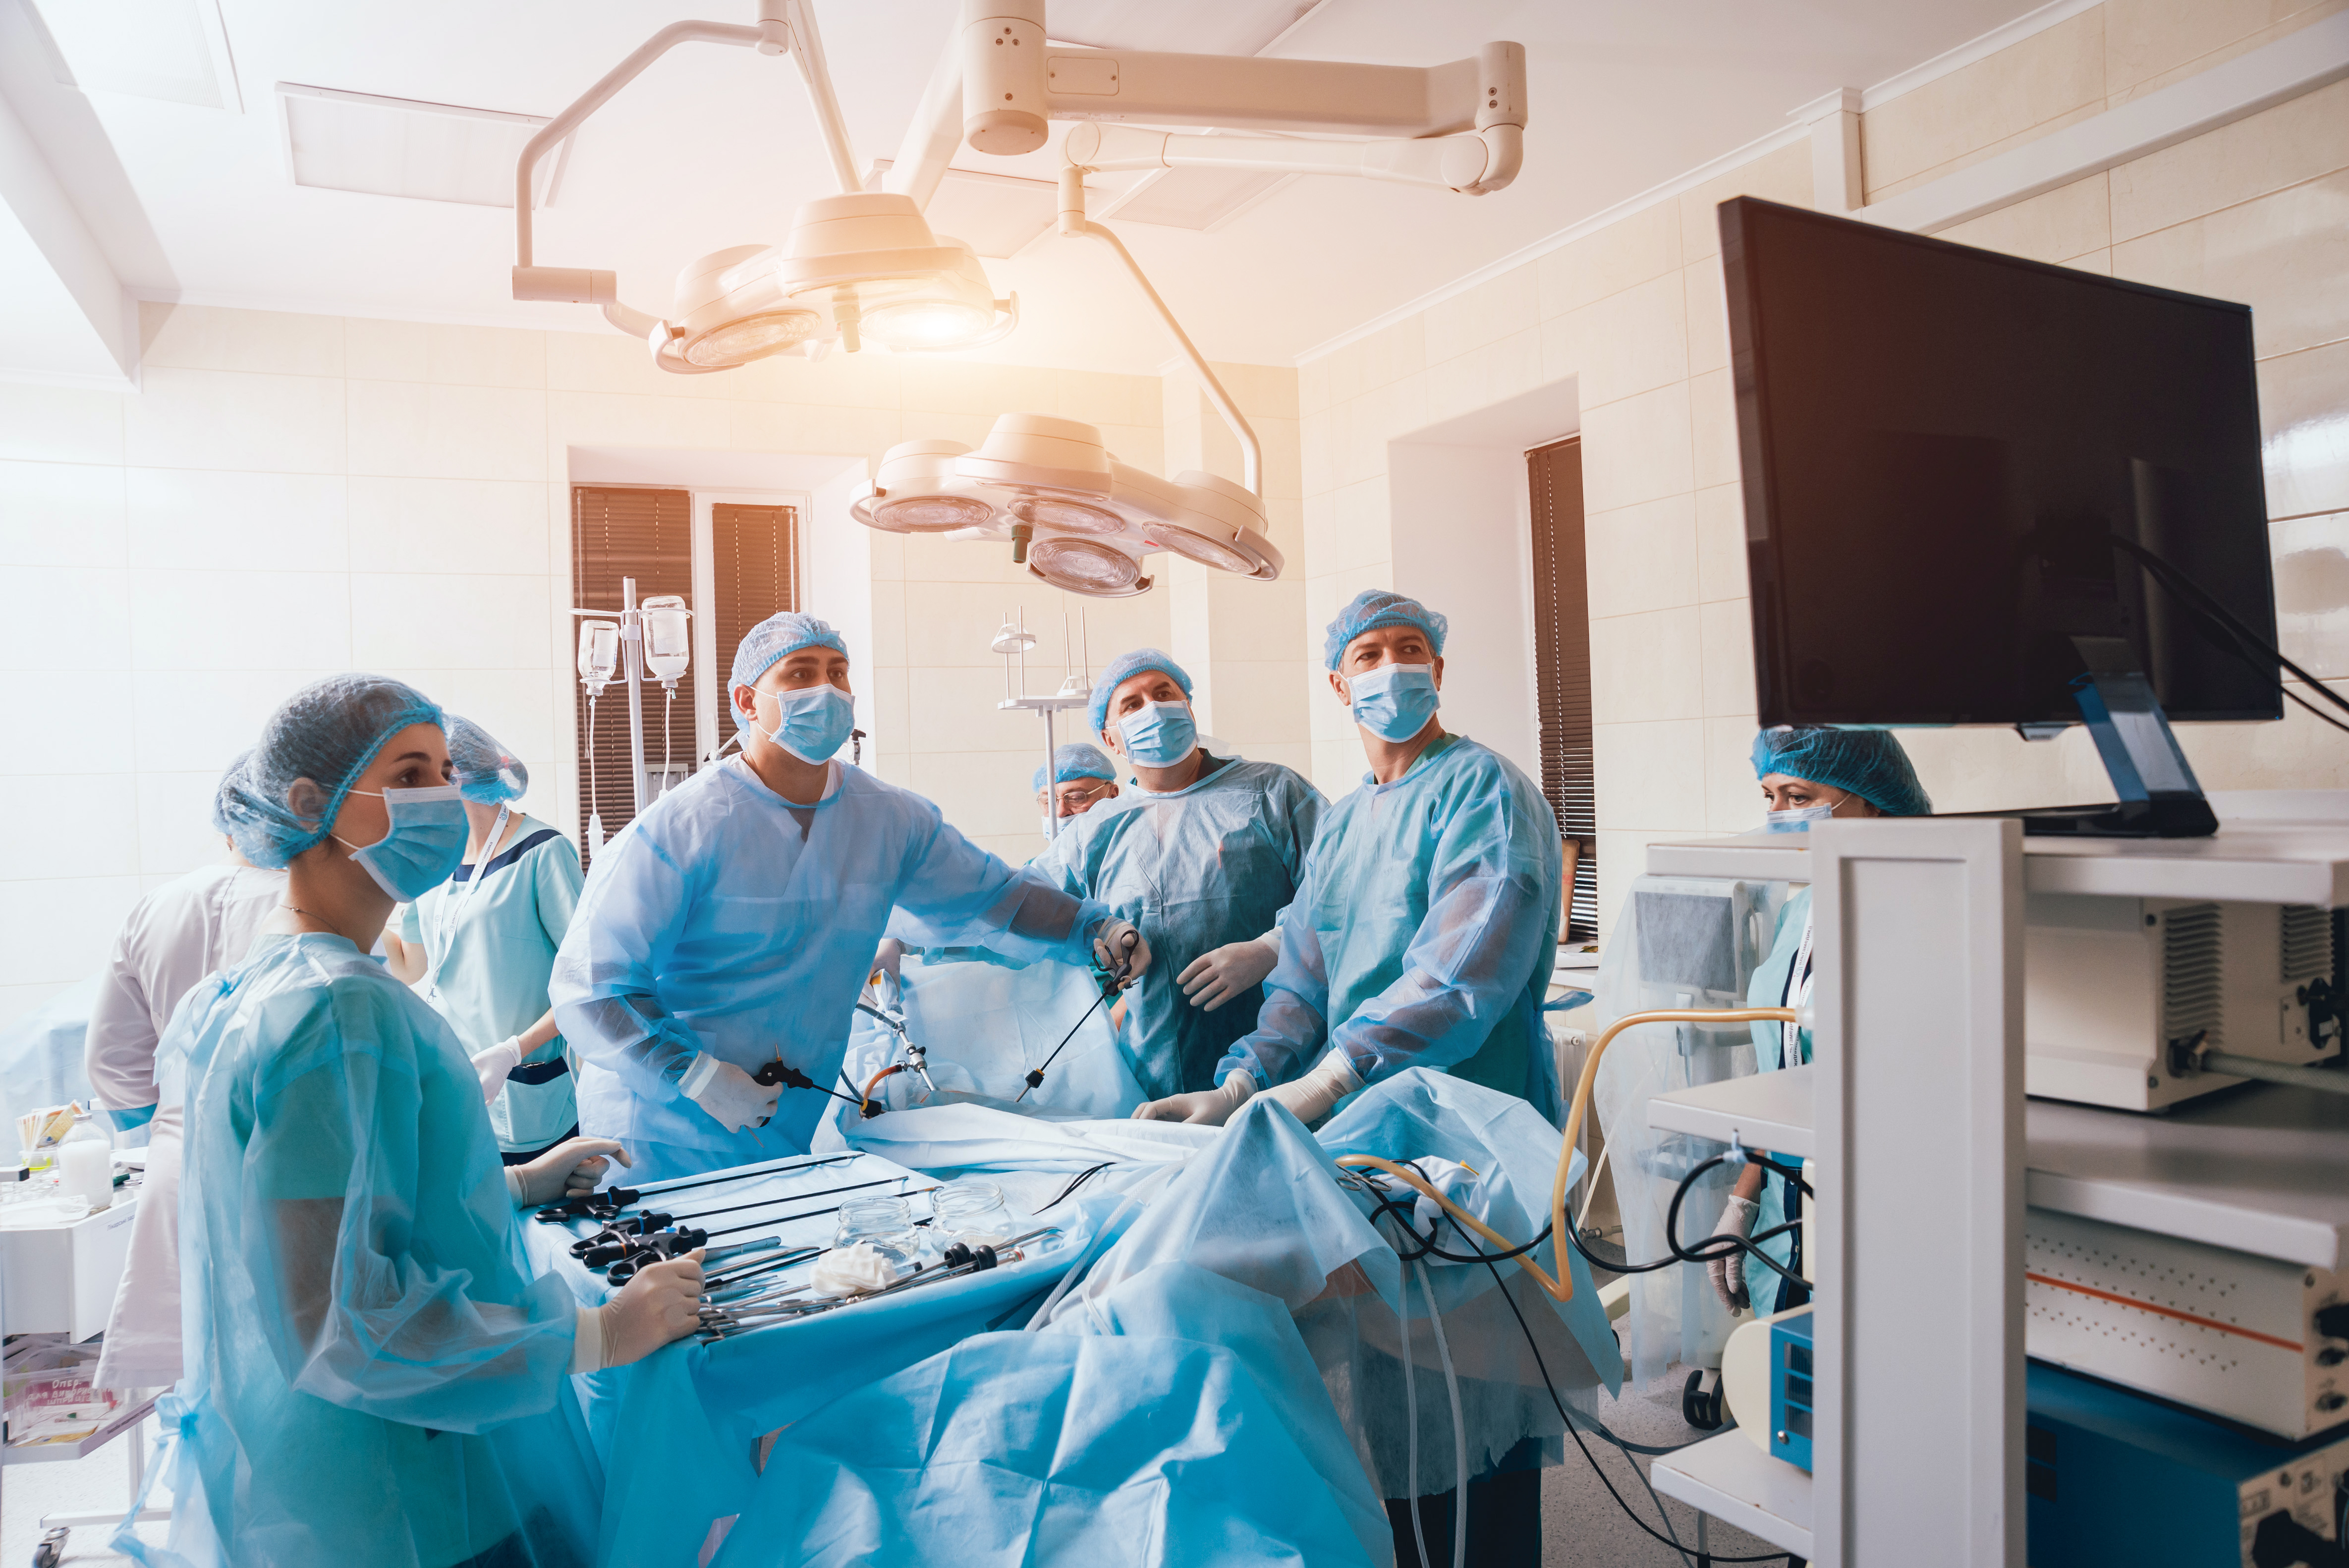 La medicina moderna incorpora enfoques mínimamente invasivos en prácticamente todas las áreas de la cirugía y su aplicación continuará expandiéndose. (Foto Prensa Libre: Shutterstock).